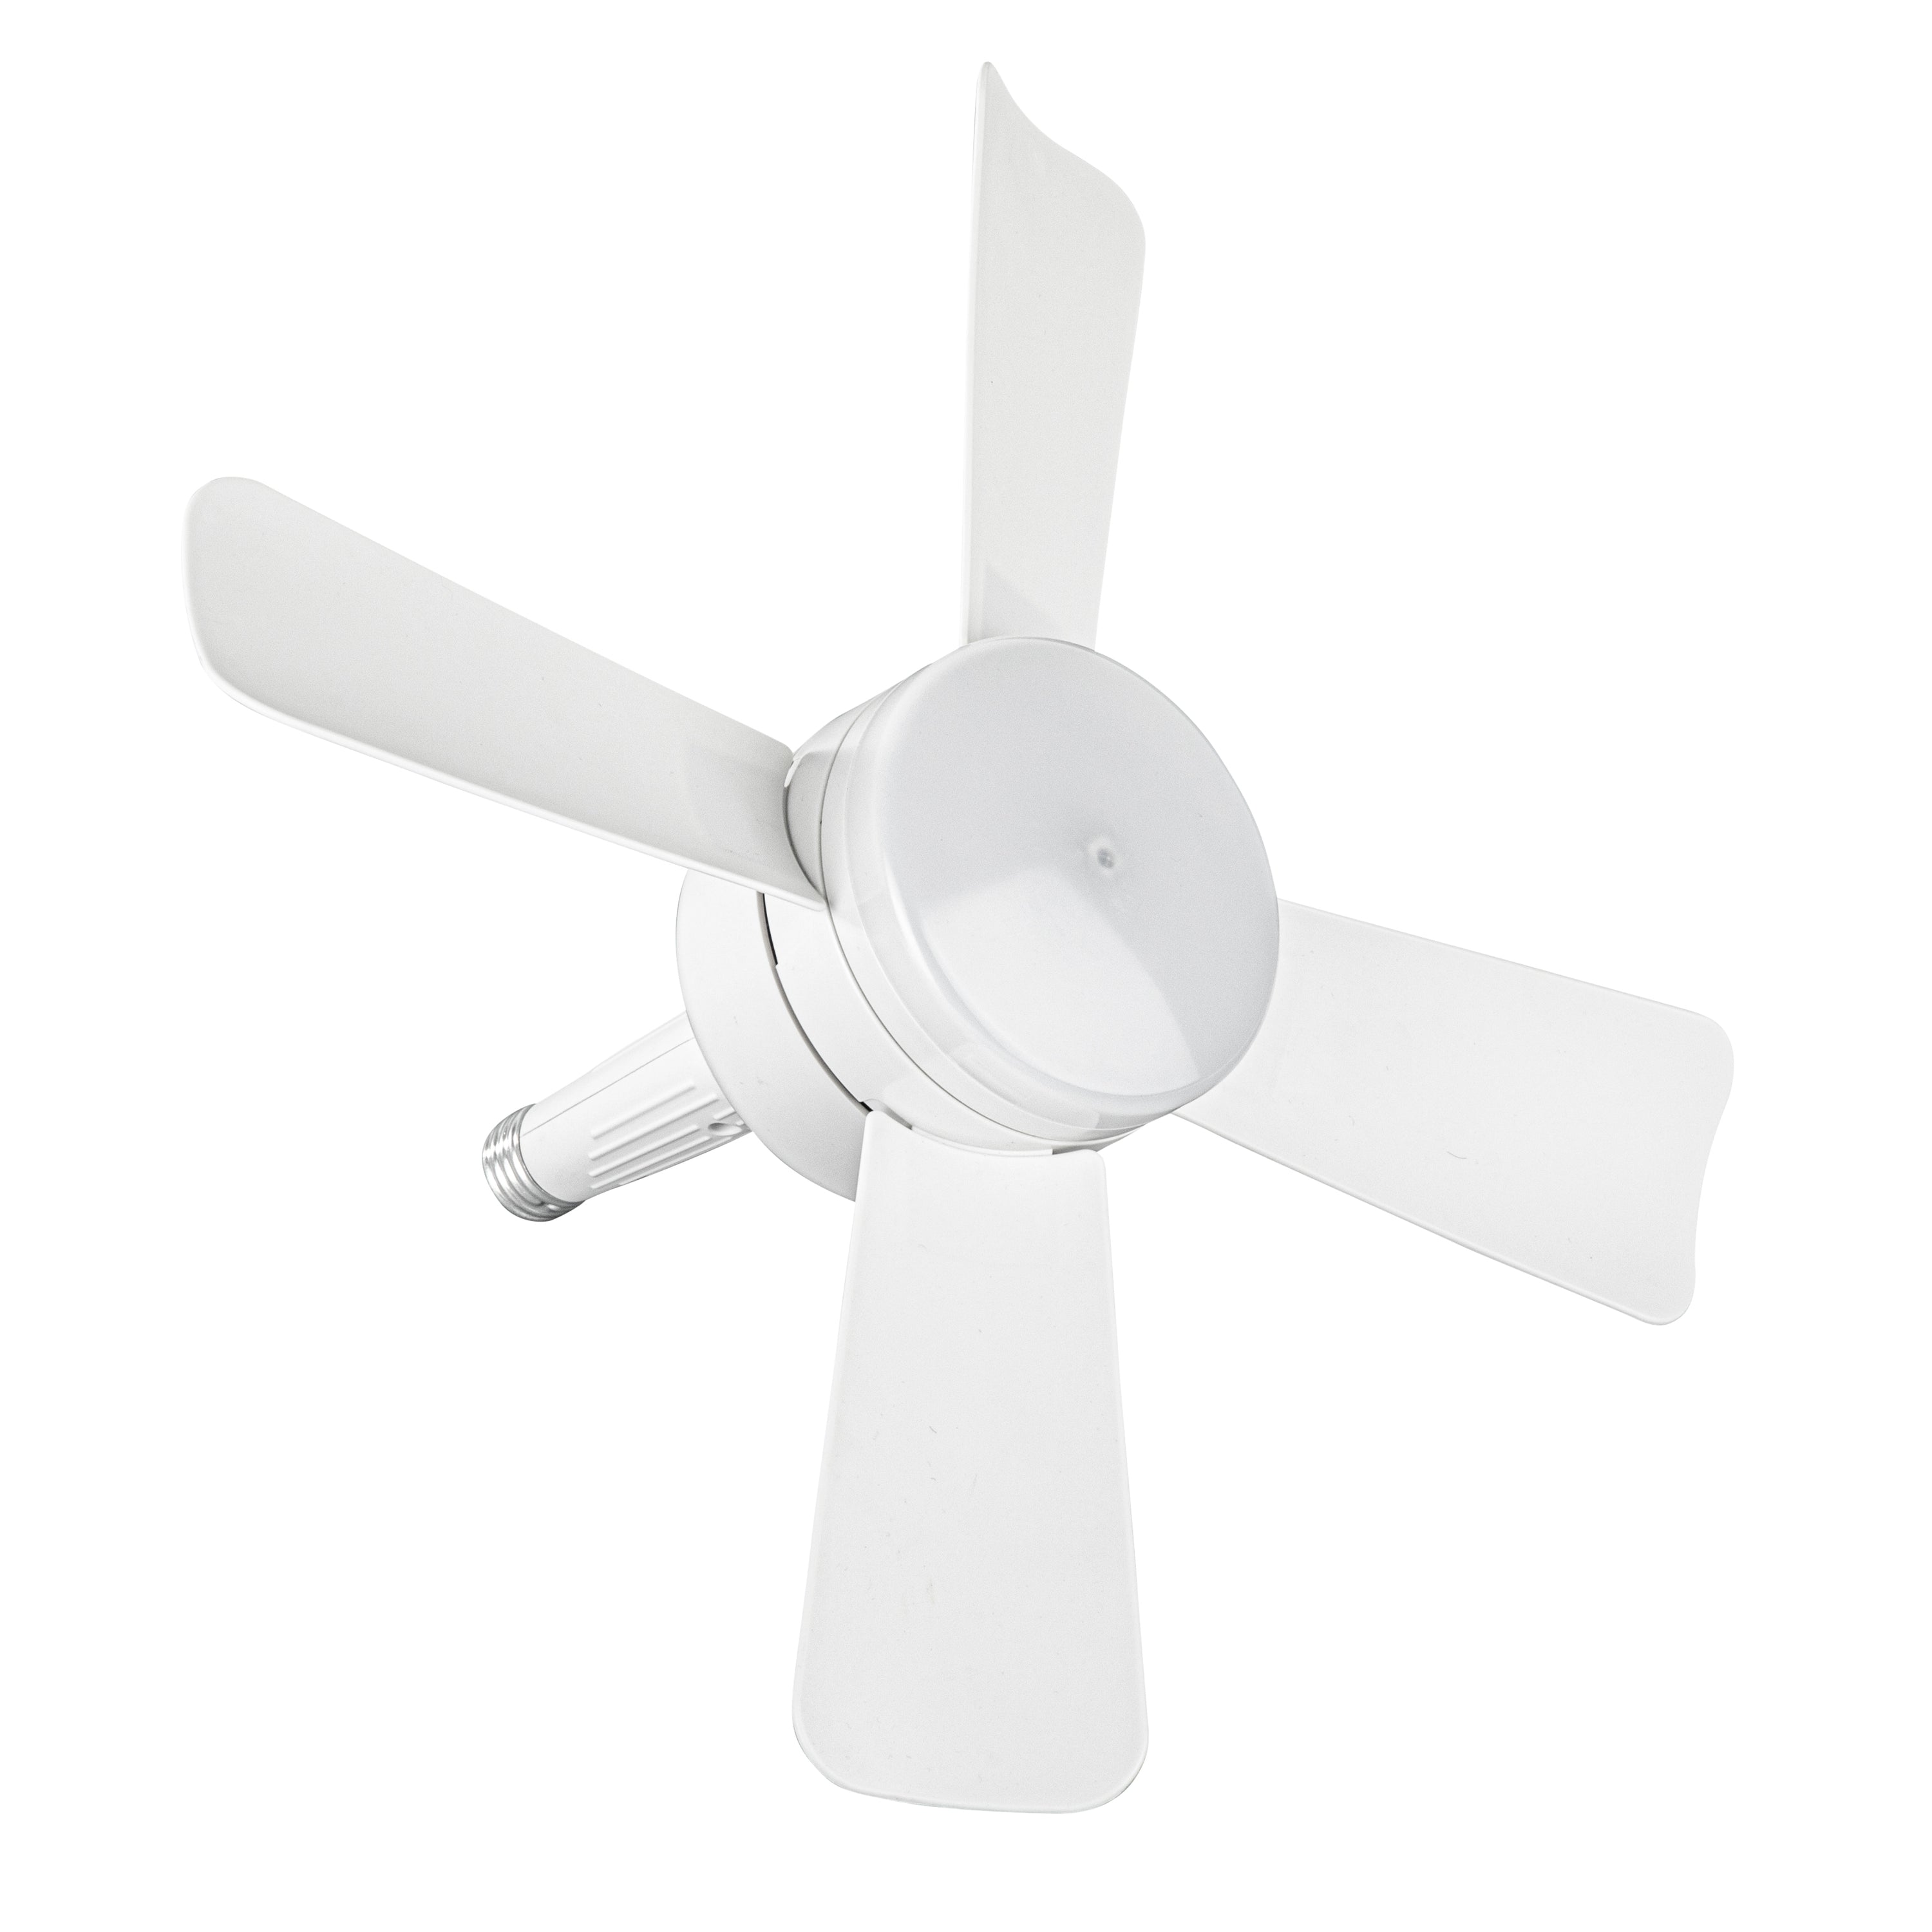 Bell + Howell Screw-In Socket Fan - Remote Controlled Socket Ceiling Fan & Light as seen on TV and TikTok #socketfan